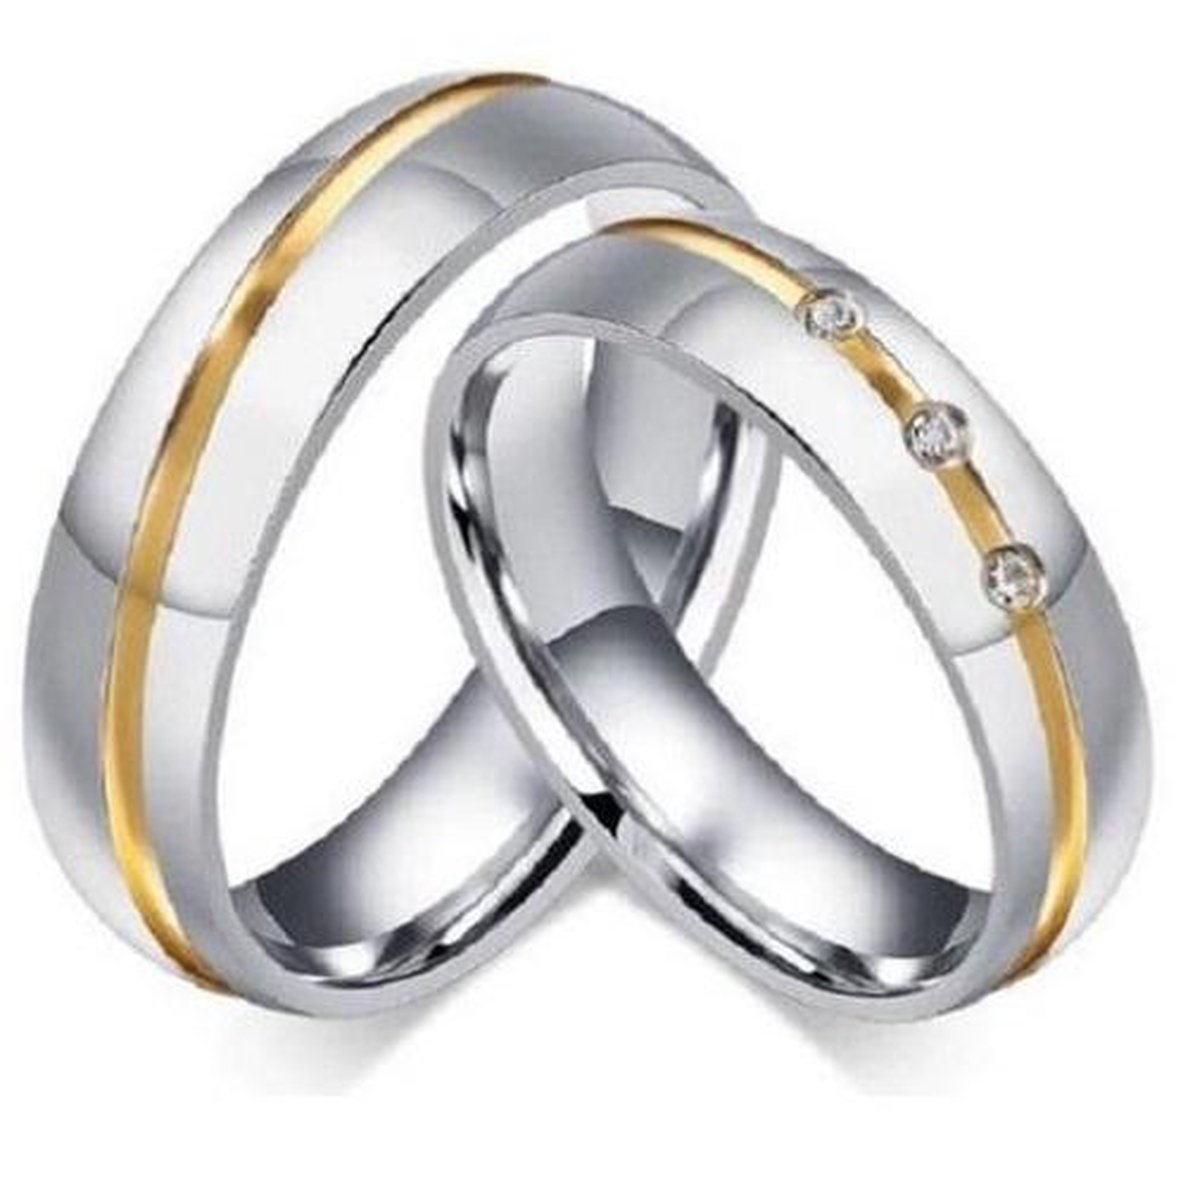 Jonline Prachtige Ringen voor hem en haar | Damesring | Herenring | Trouwringen | Vriendschapsringen - Jonline